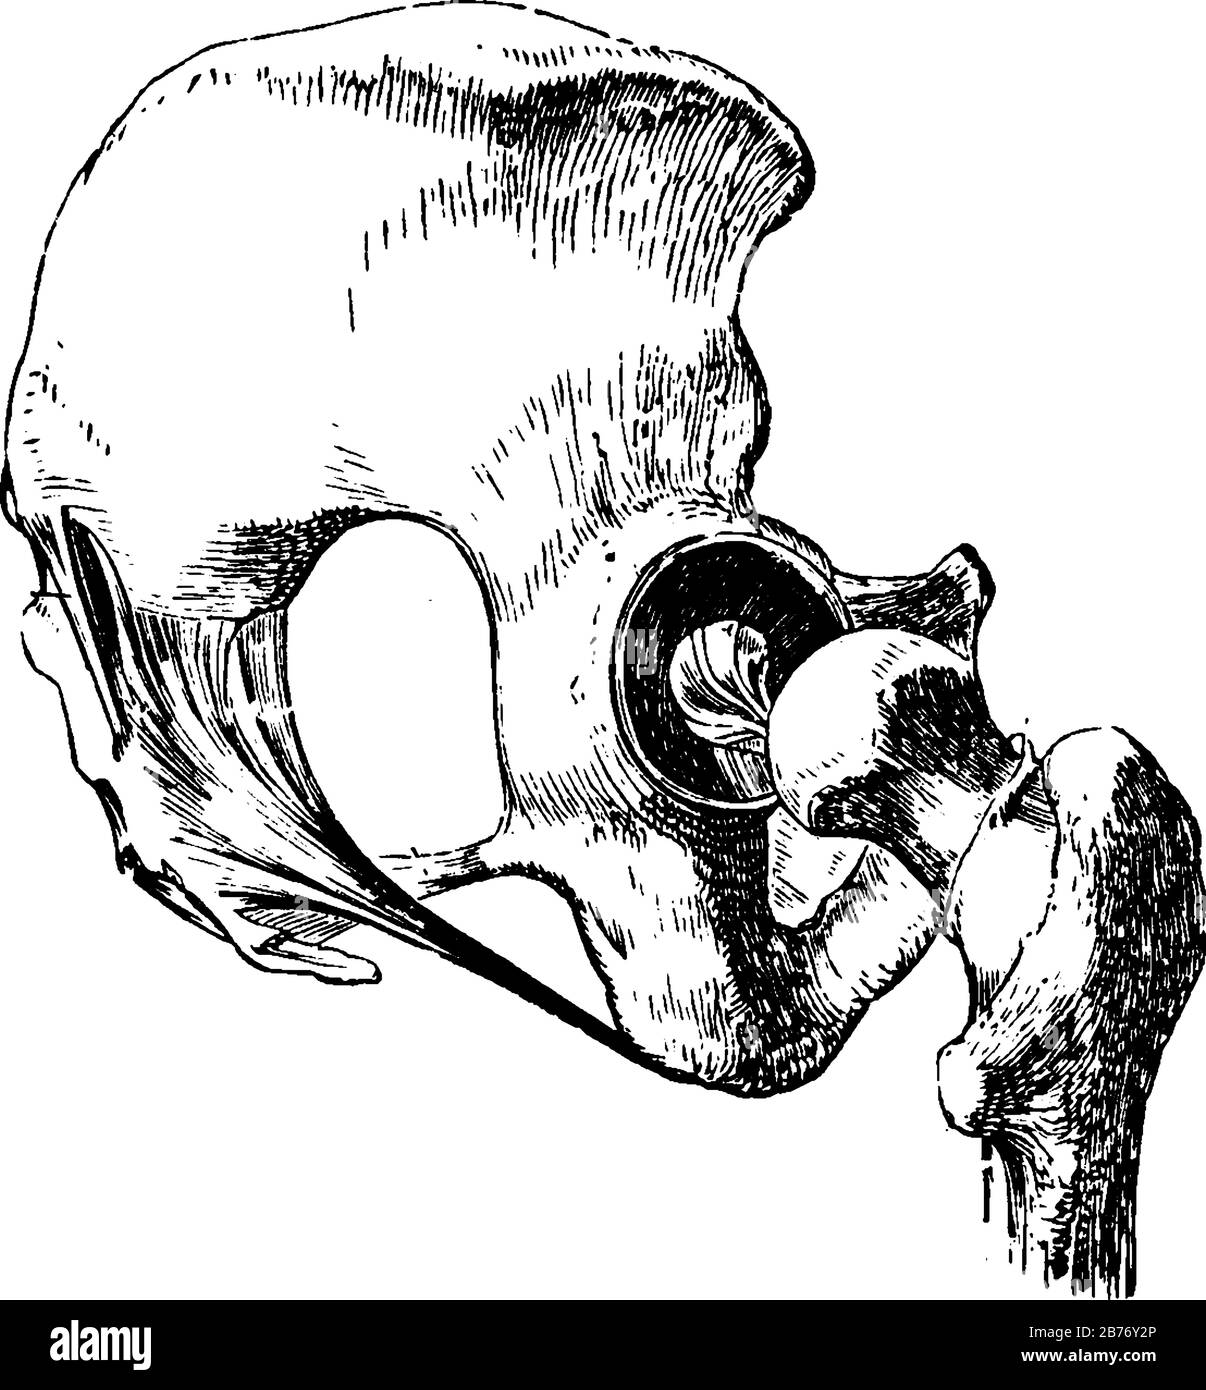 Hüftgelenk, das Kugelgelenk, das ein Bein mit dem Stamm des Körpers verbindet, mit abgenommenen Bändern, mit Ausnahme des auf dem Oberschenkelkopf, Vinta Stock Vektor